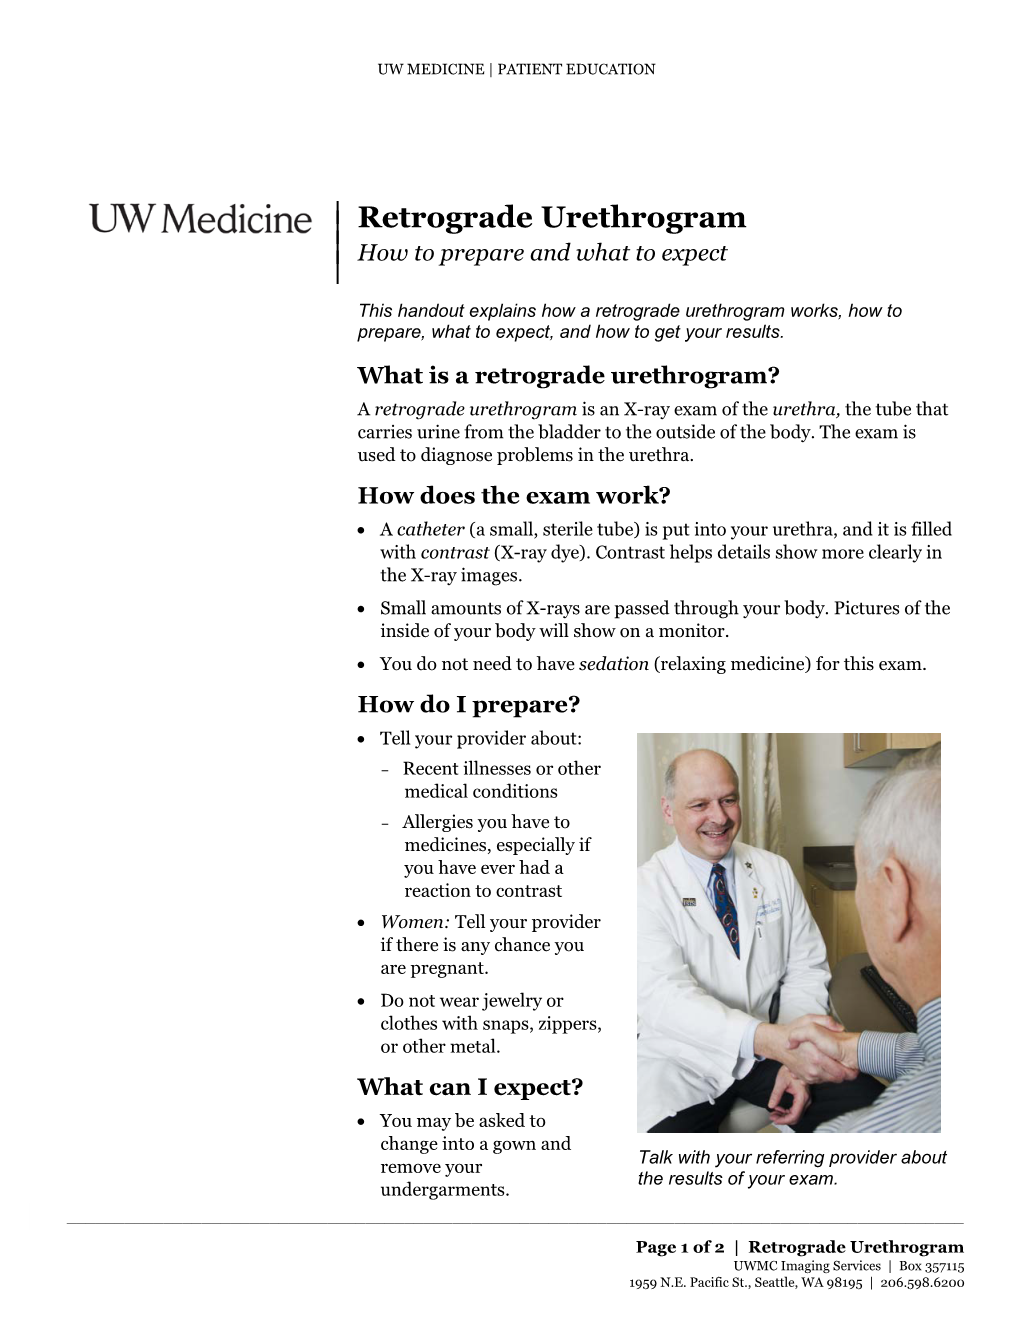 Retrograde Urethrogram | | How to Prepare and What to Expect |